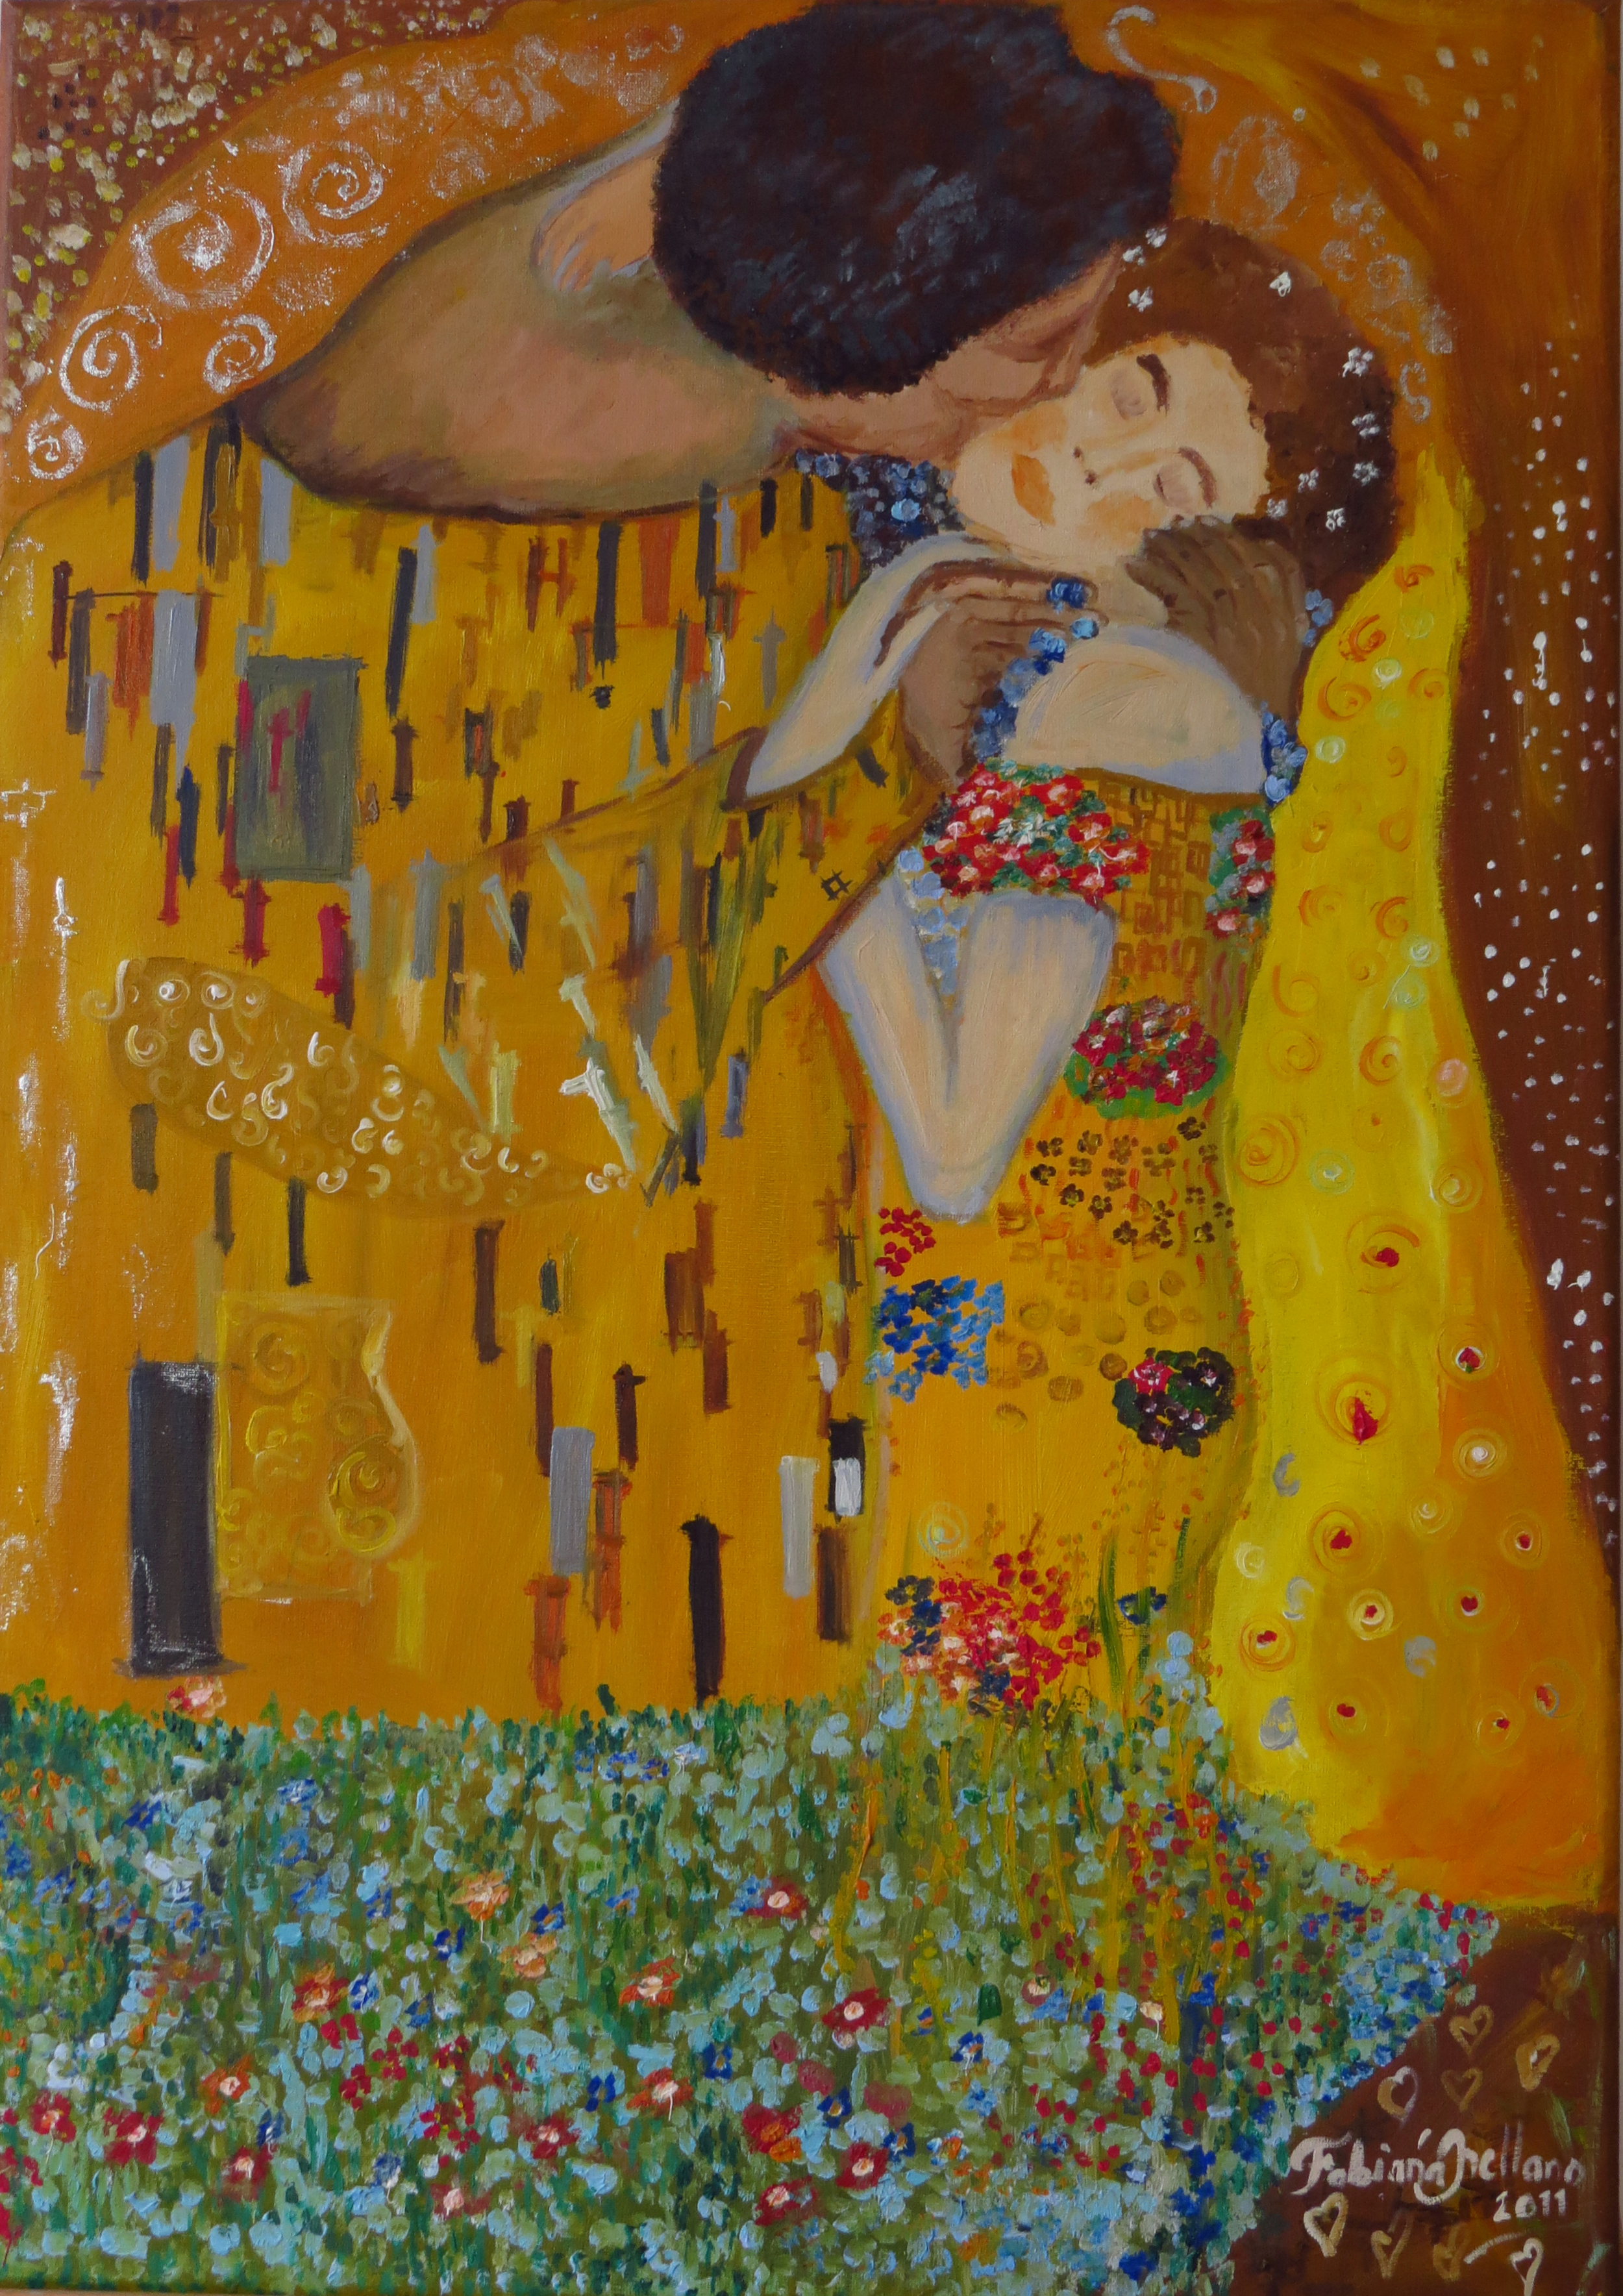 Study about Gustav Klimt's masterpieces